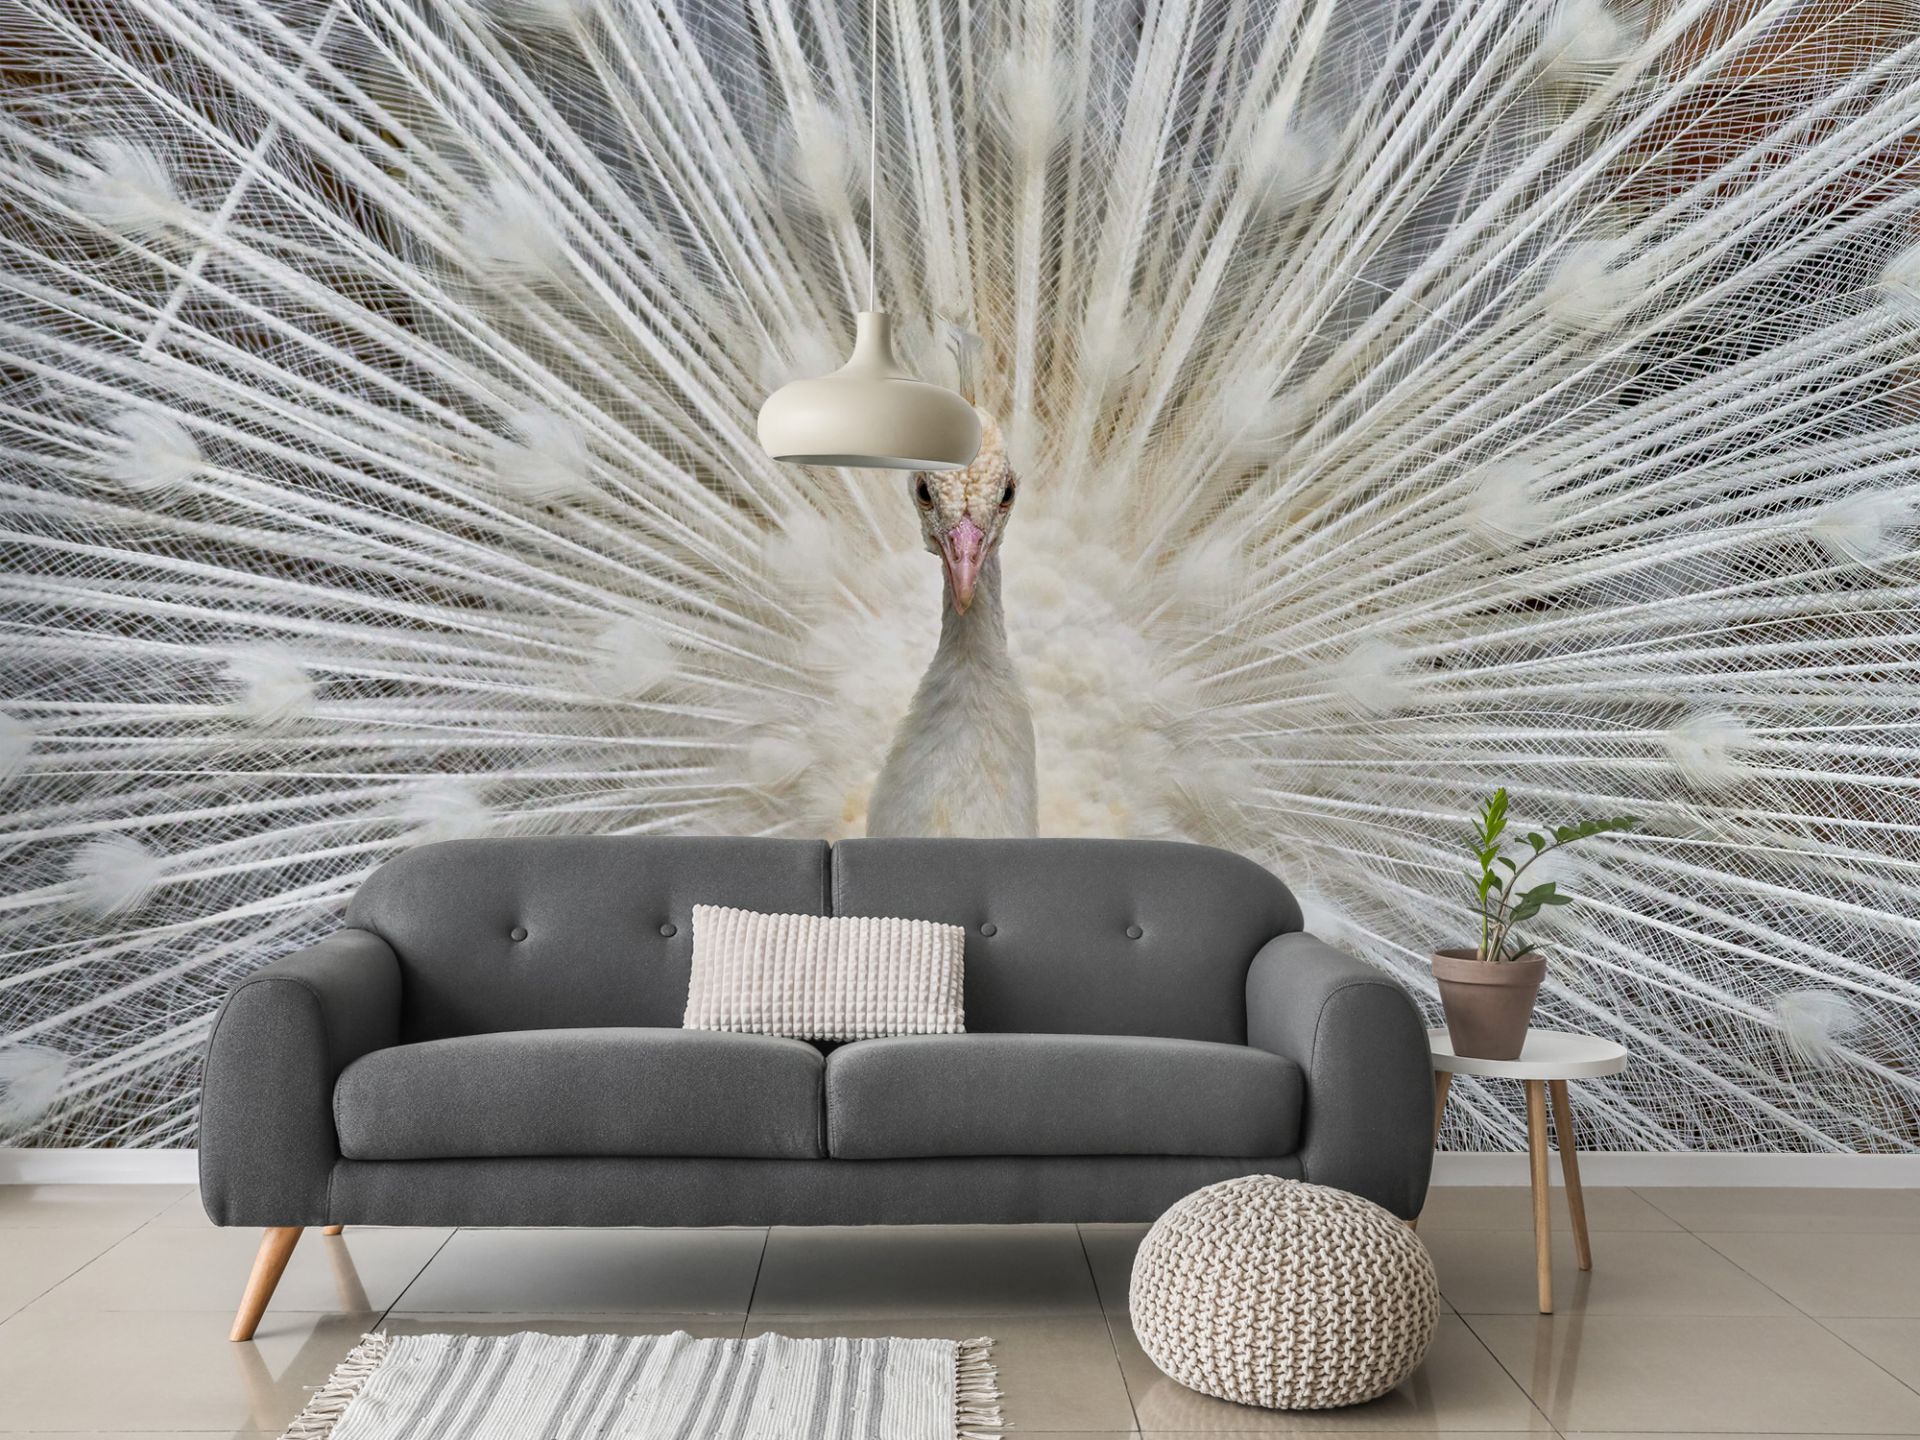 White peacock - Wallpaper